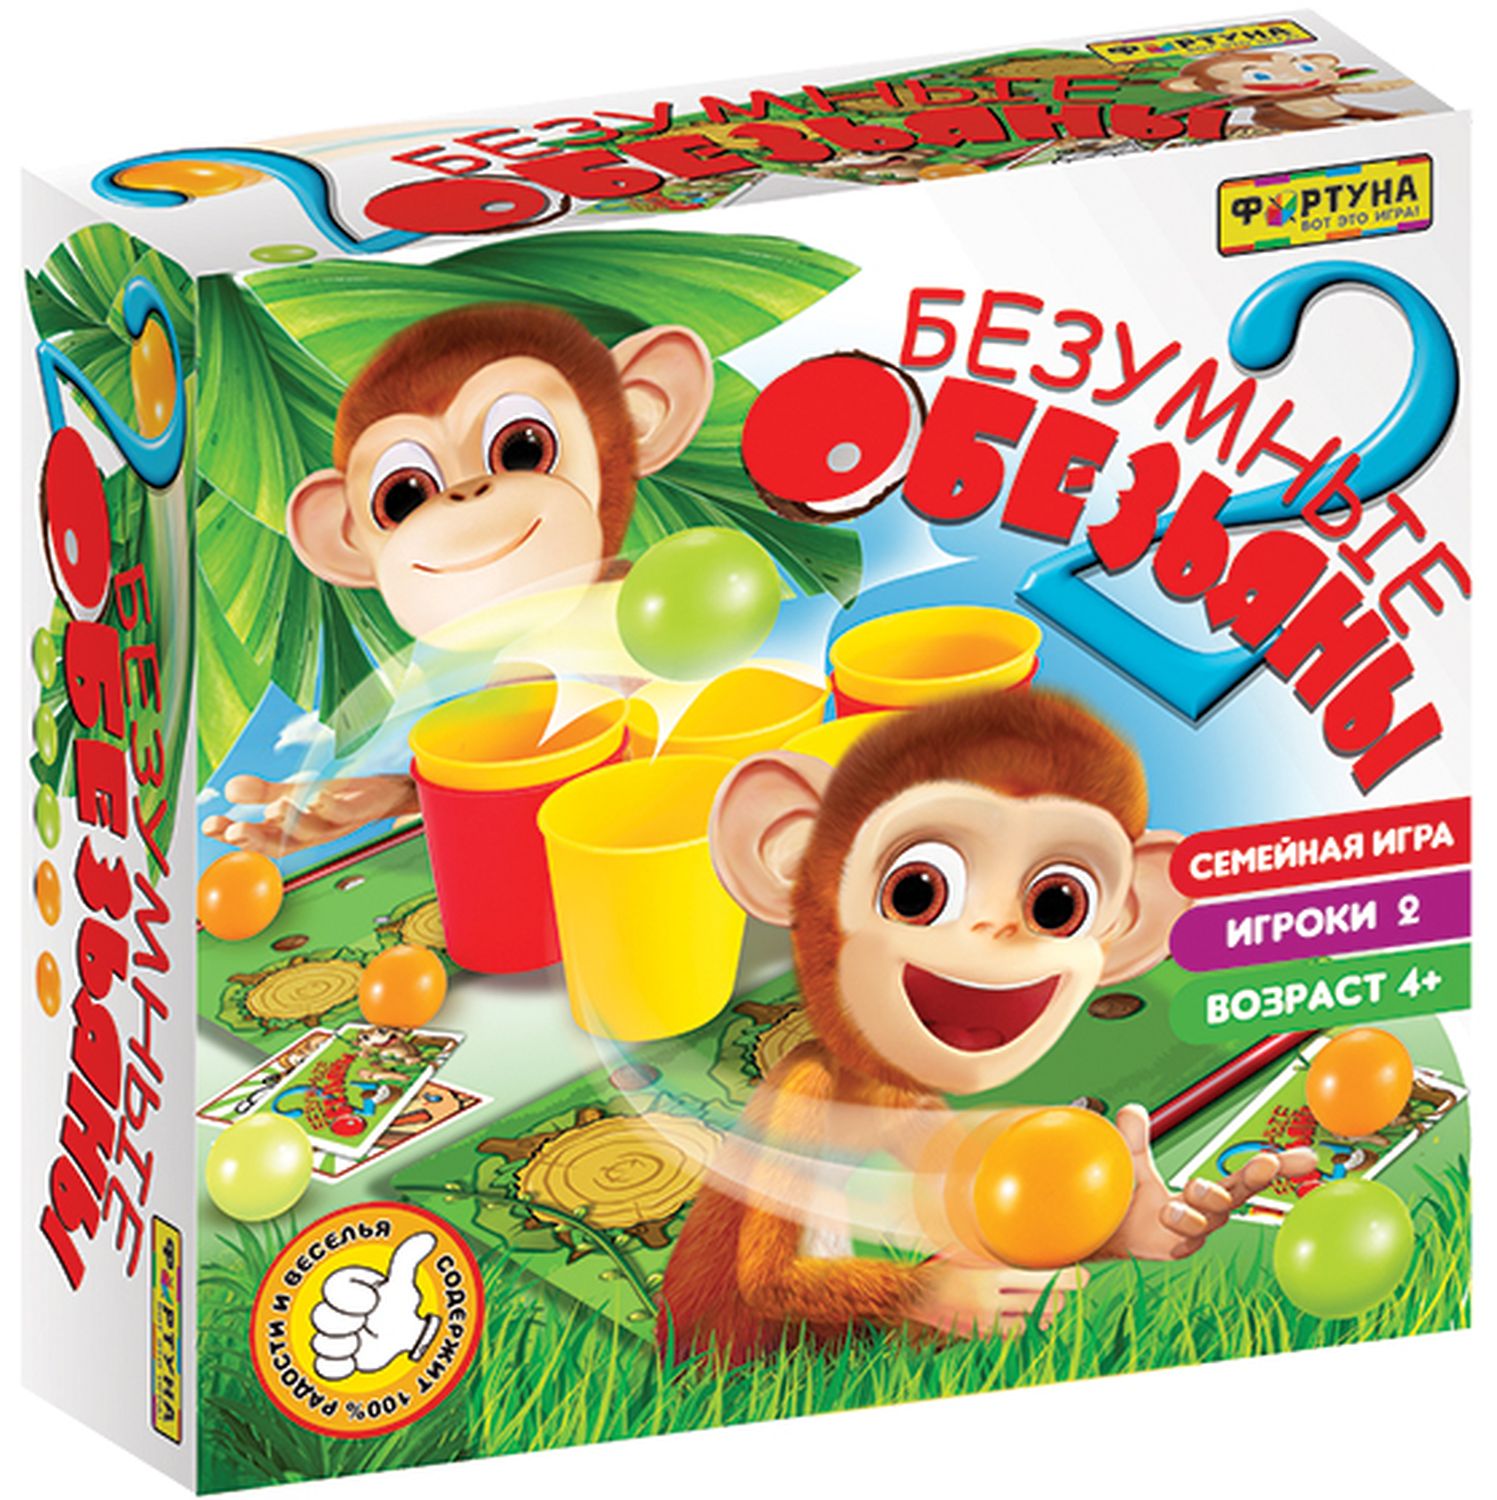 Настольная семейная игра 2 безумные обезьяны Ф86180 Фортуна